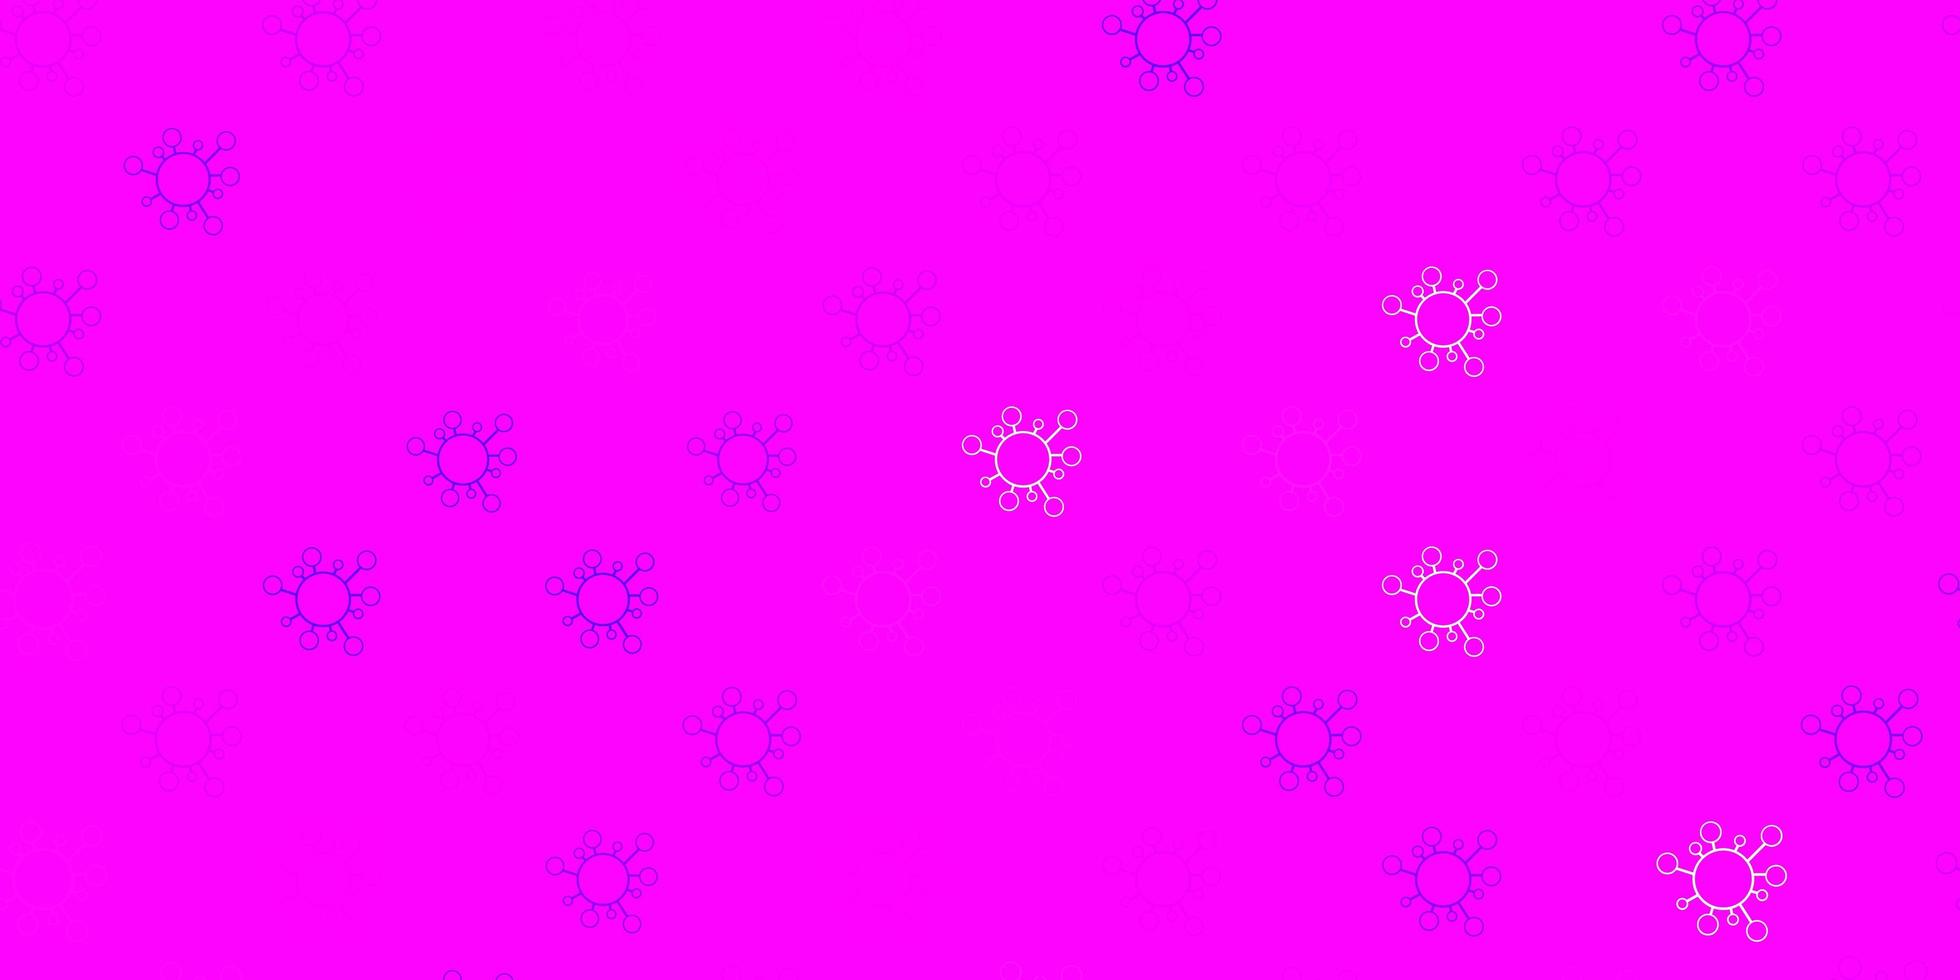 textura de vetor rosa roxo claro com símbolos de doenças